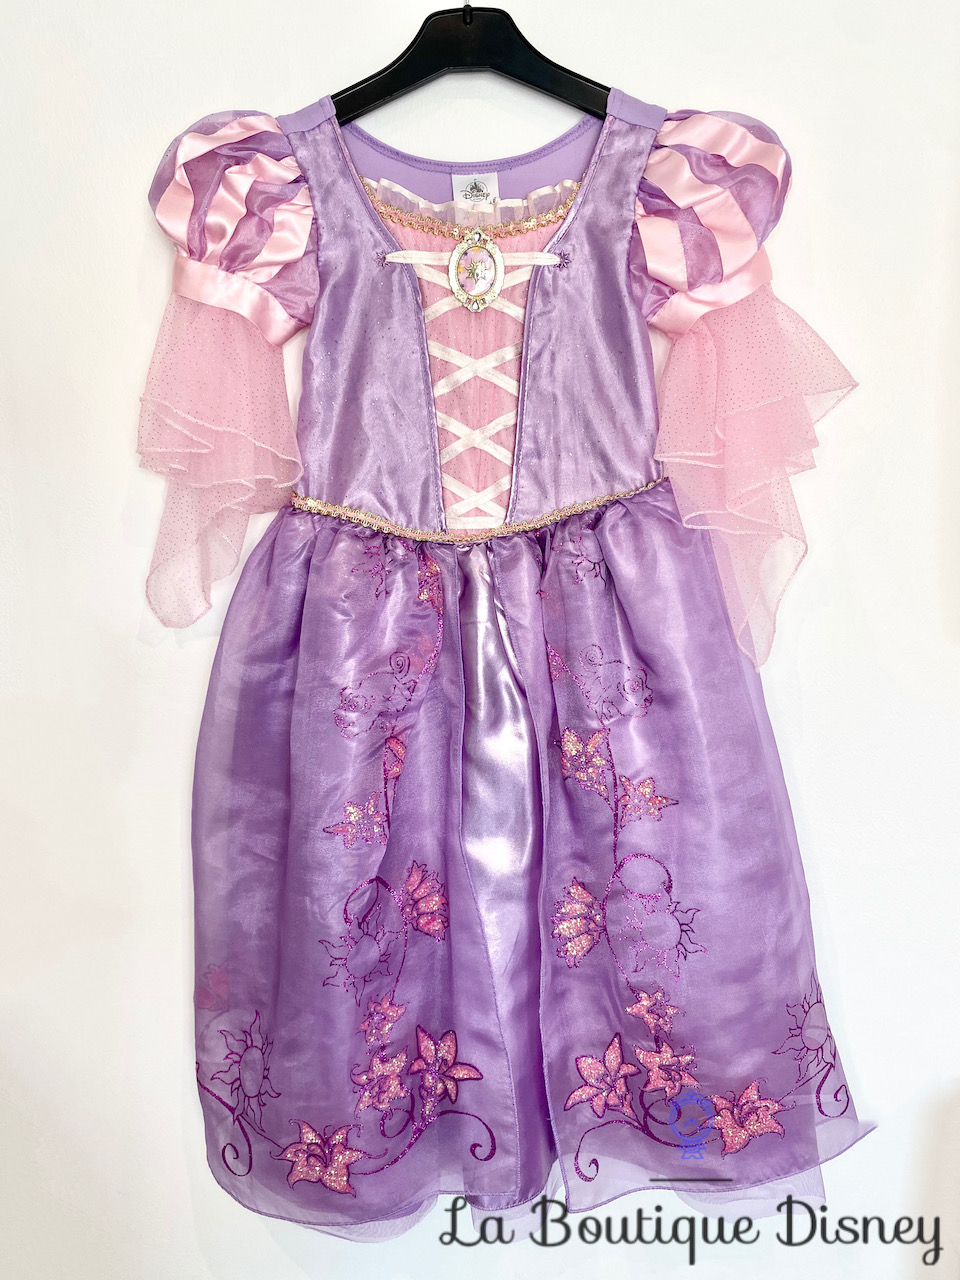 déguisement-raiponce-disney-store-taille-5-6-ans-robe-princesse-violet-paillettes-voile-rose-3